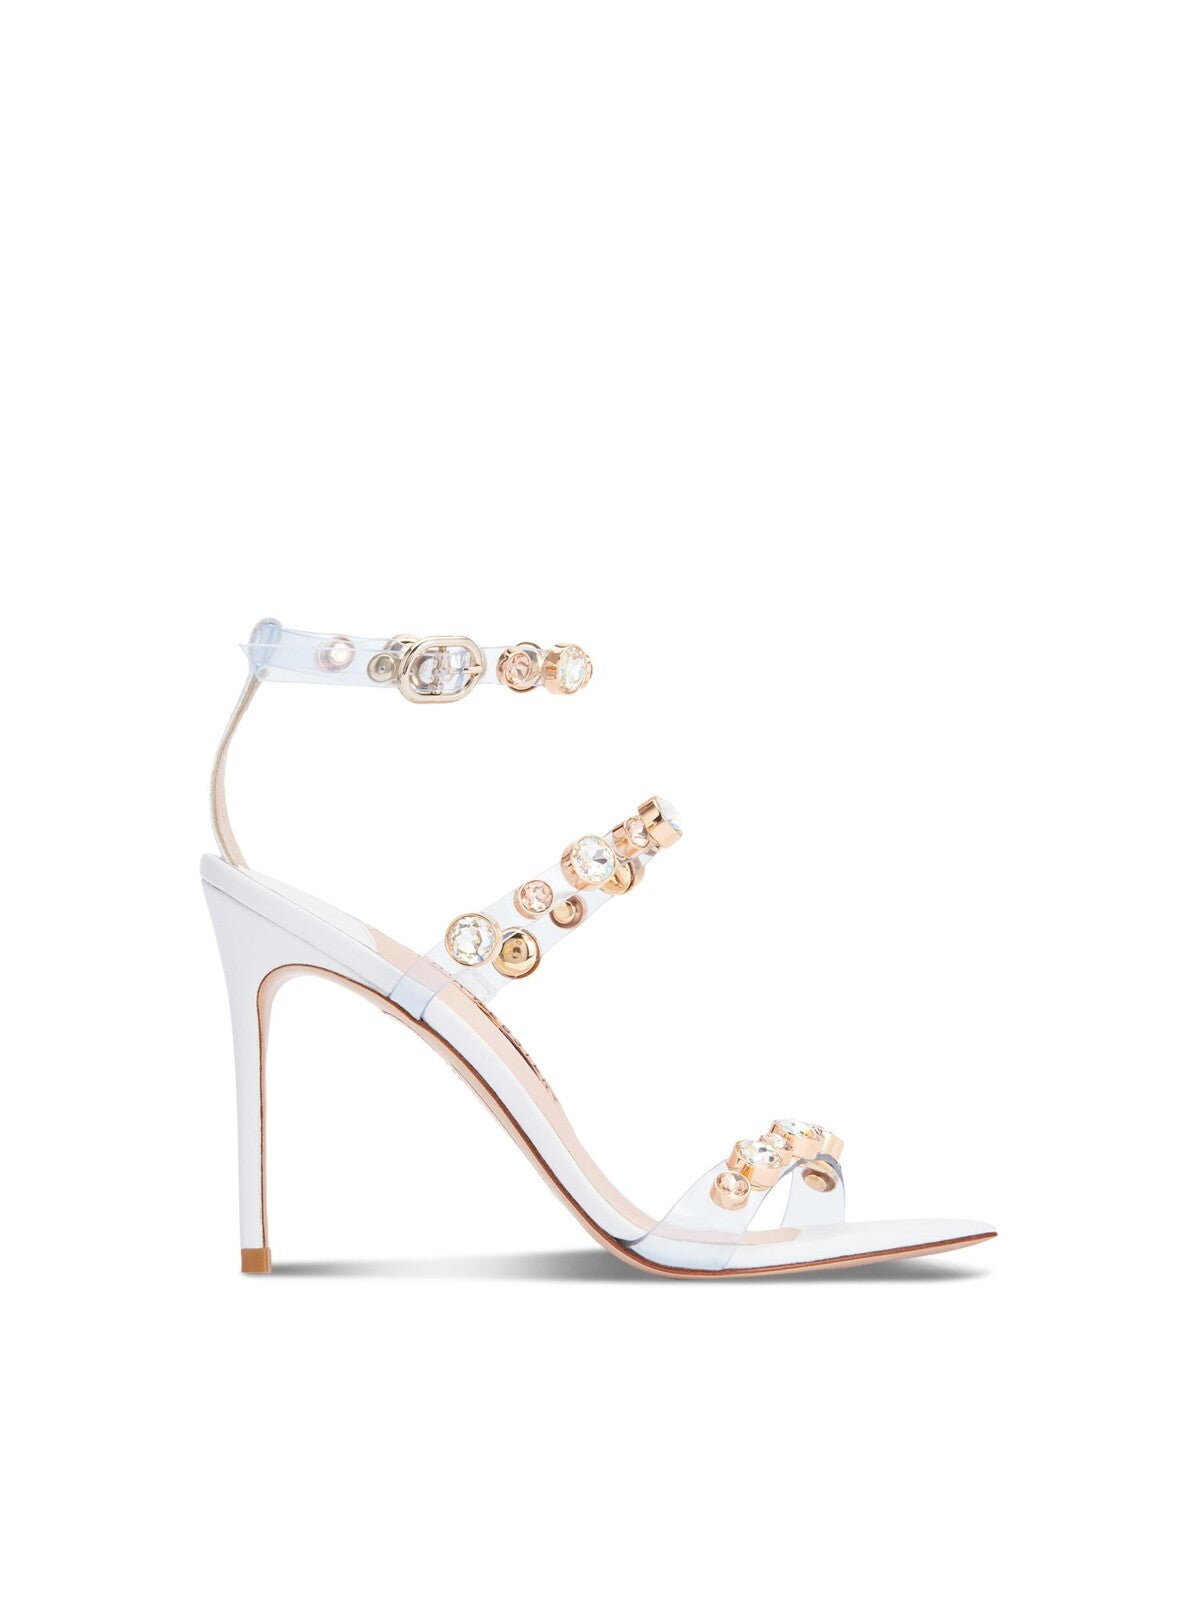 SOPHIA WEBSTER Womens White Embellished Adjustable Rosalind Square Toe Stiletto Buckle Dress Heels Shoes 37.5